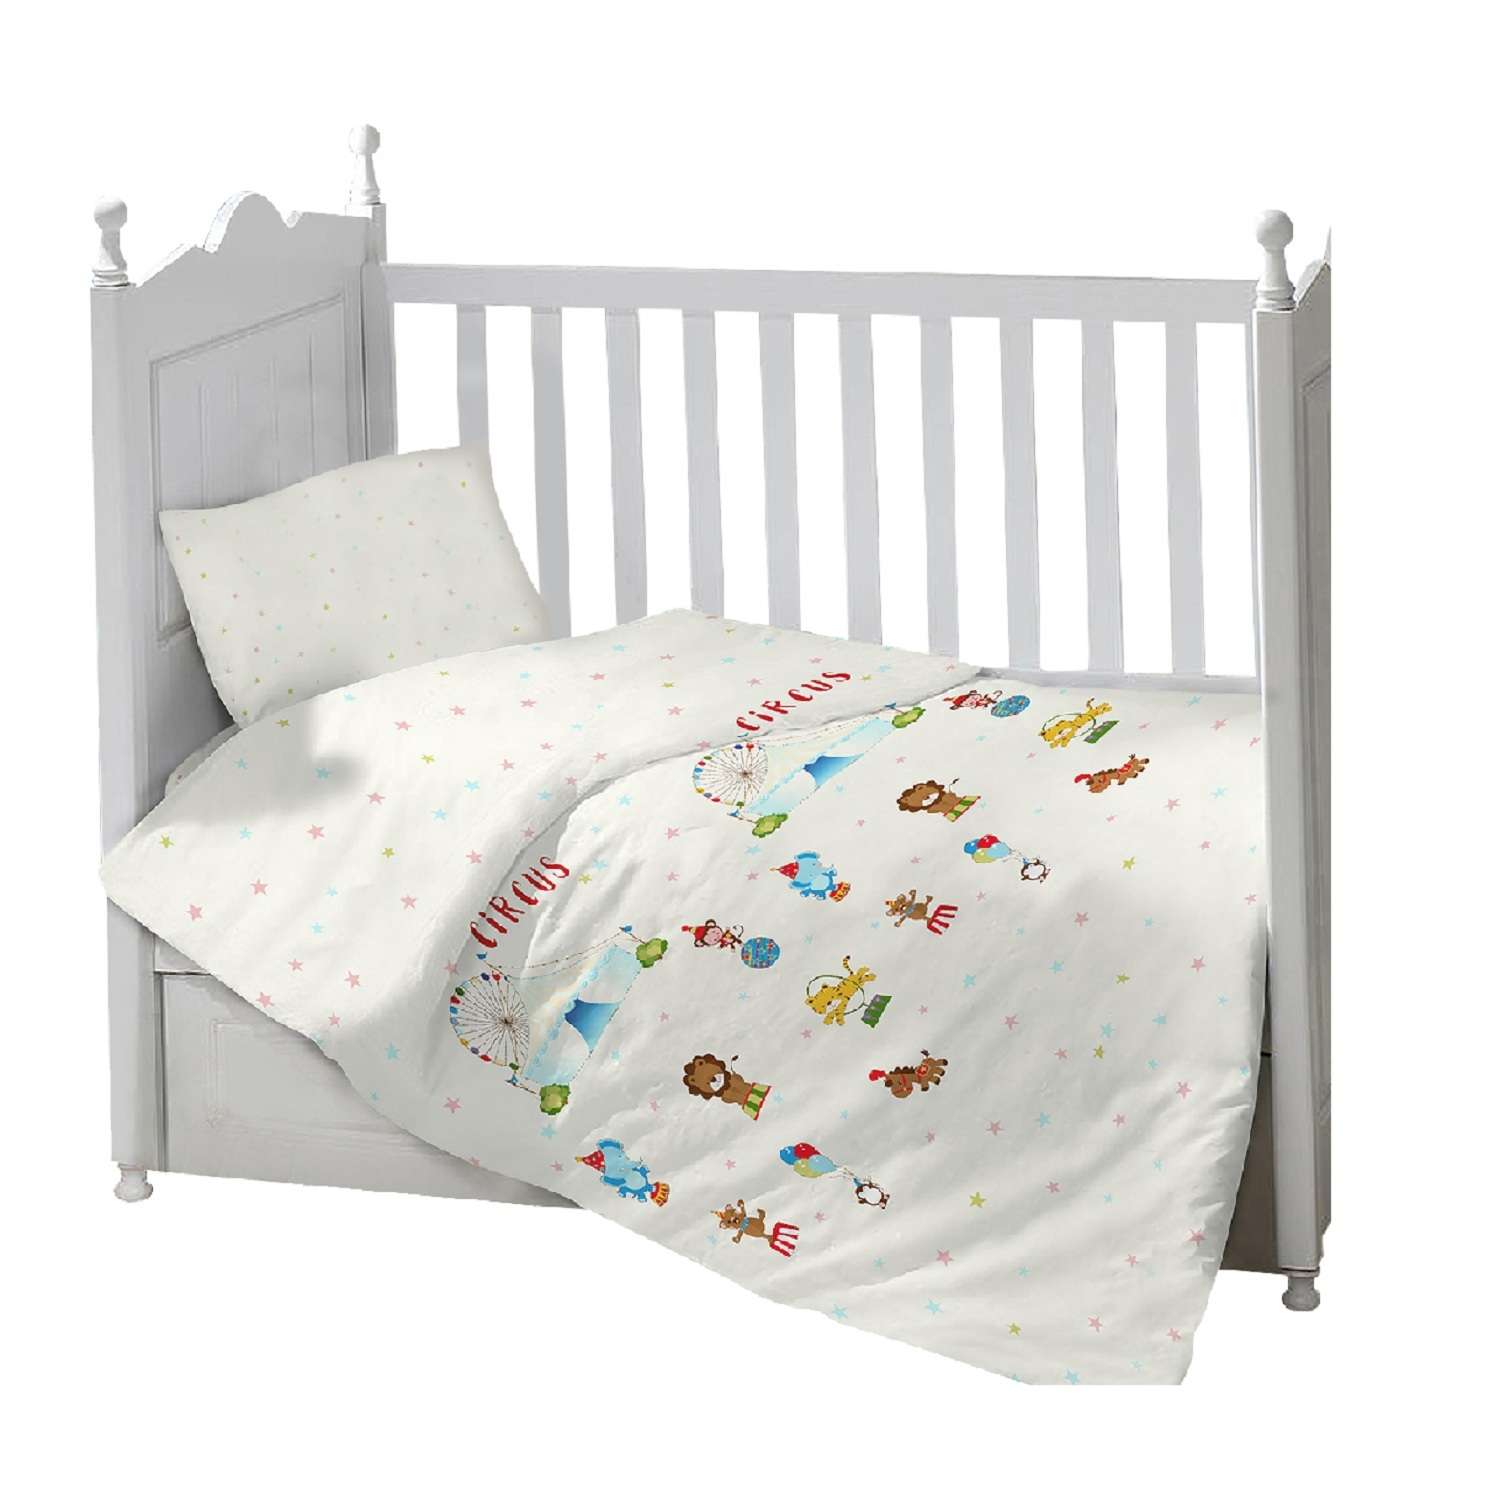 Комплект в кроватку Sweet Baby Gioco Circo 3предмета с рисунком Молочный - фото 1